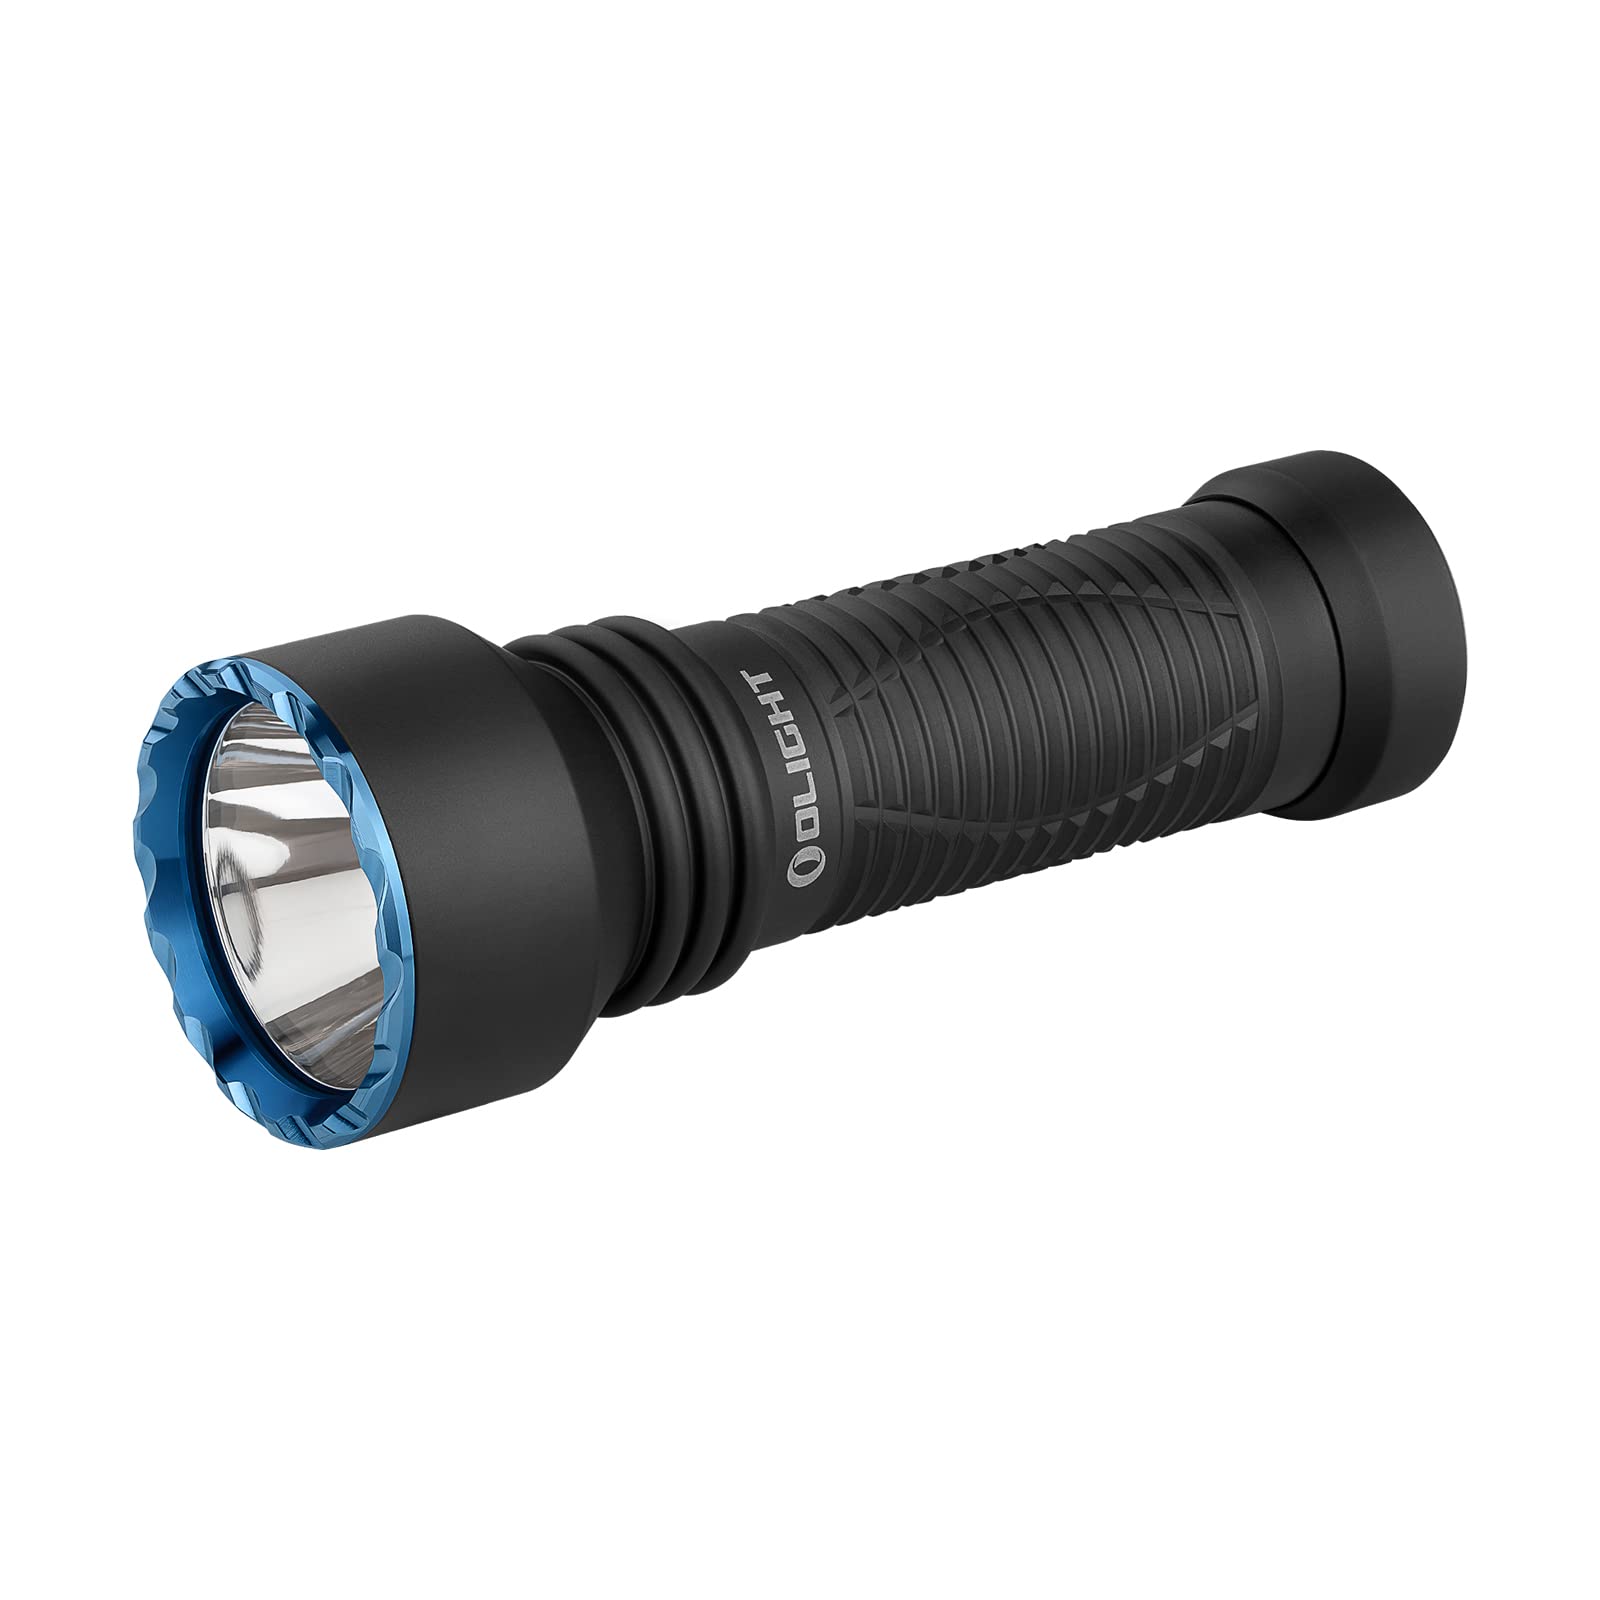 OLIGHT Javelot Mini LED taktische Taschenlampe mit einer runden Lichtquelle,Bis zu 1000 Lumen 600 Meter EDC helle Taschenlampe, wiederaufbare IPX8 zoombare Handlampe für Notfall, Patrouille, Camping